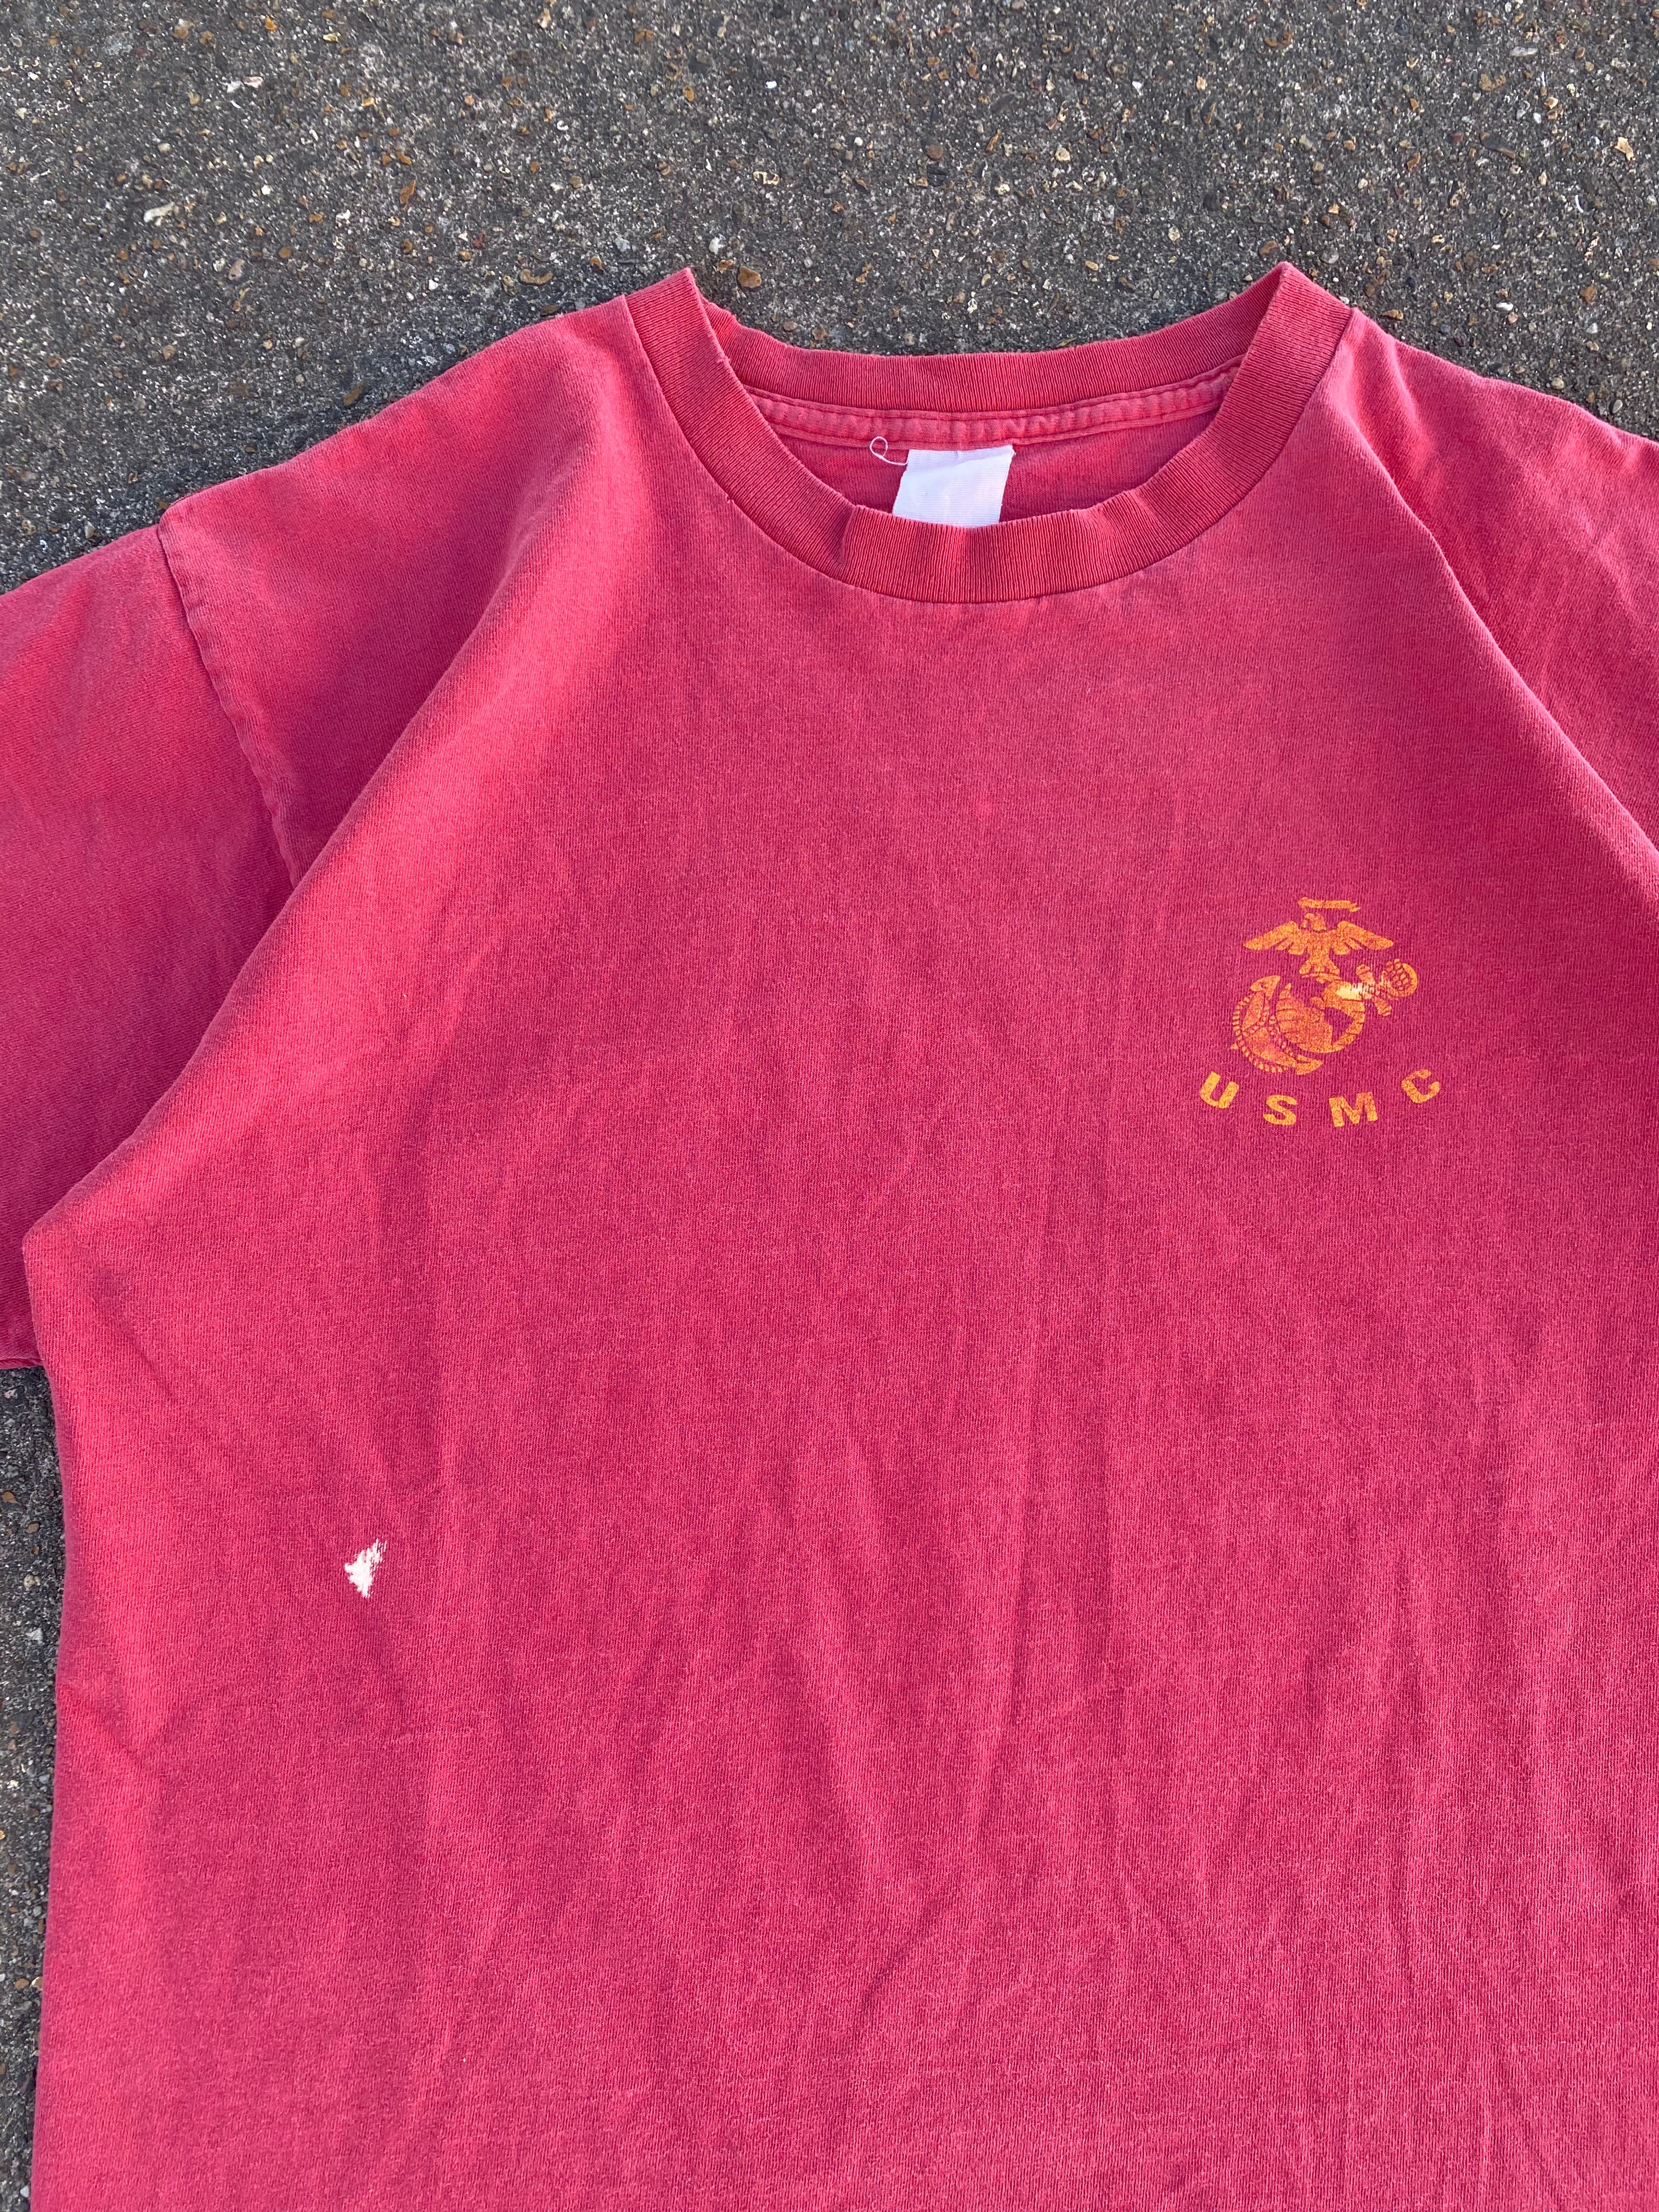 1990s USMC Faded T-Shirt (L)